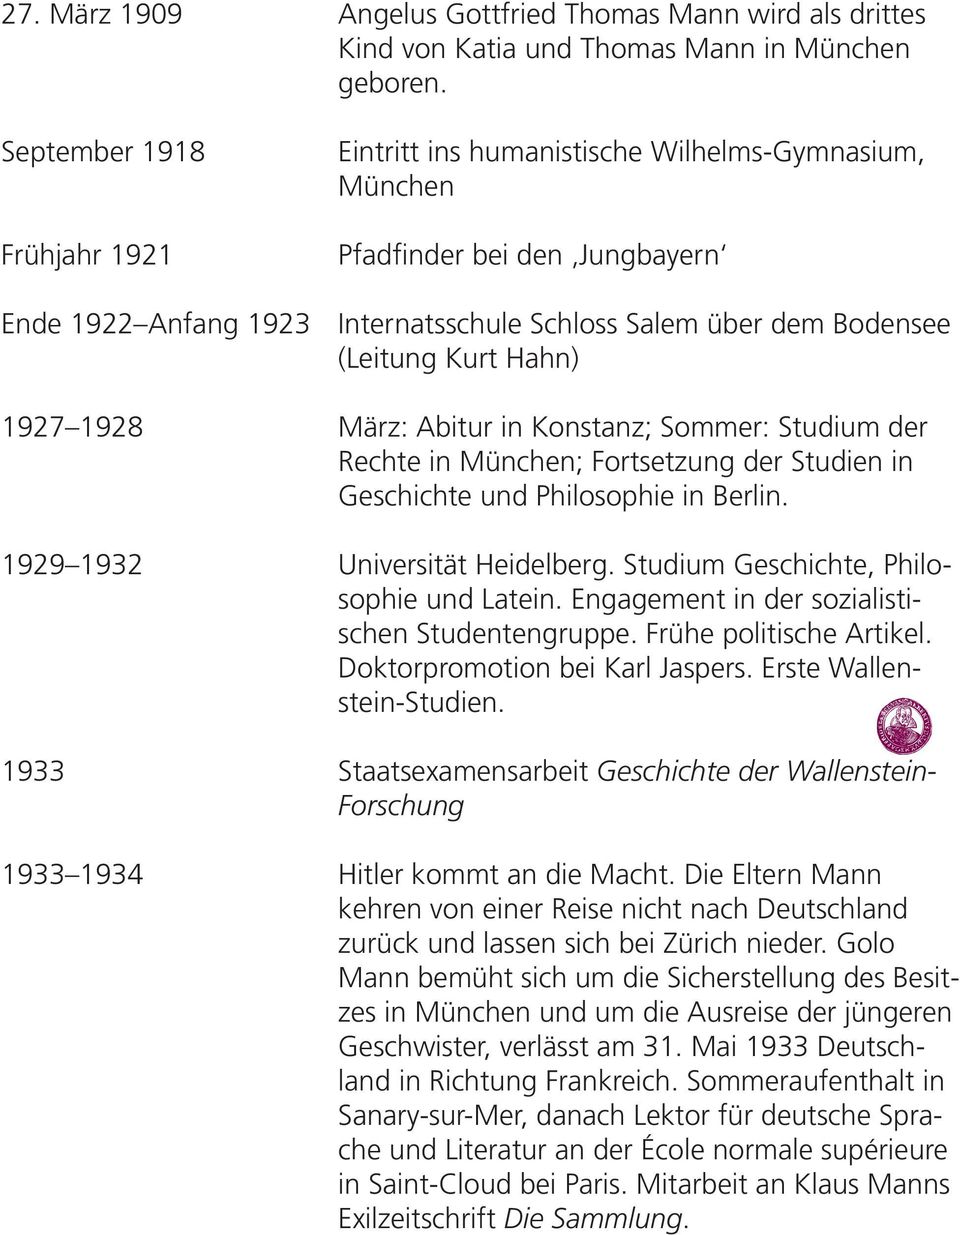 Rechte in München; Fortsetzung der Studien in Geschichte und Philosophie in Berlin. Universität Heidelberg. Studium Geschichte, Philosophie und Latein.